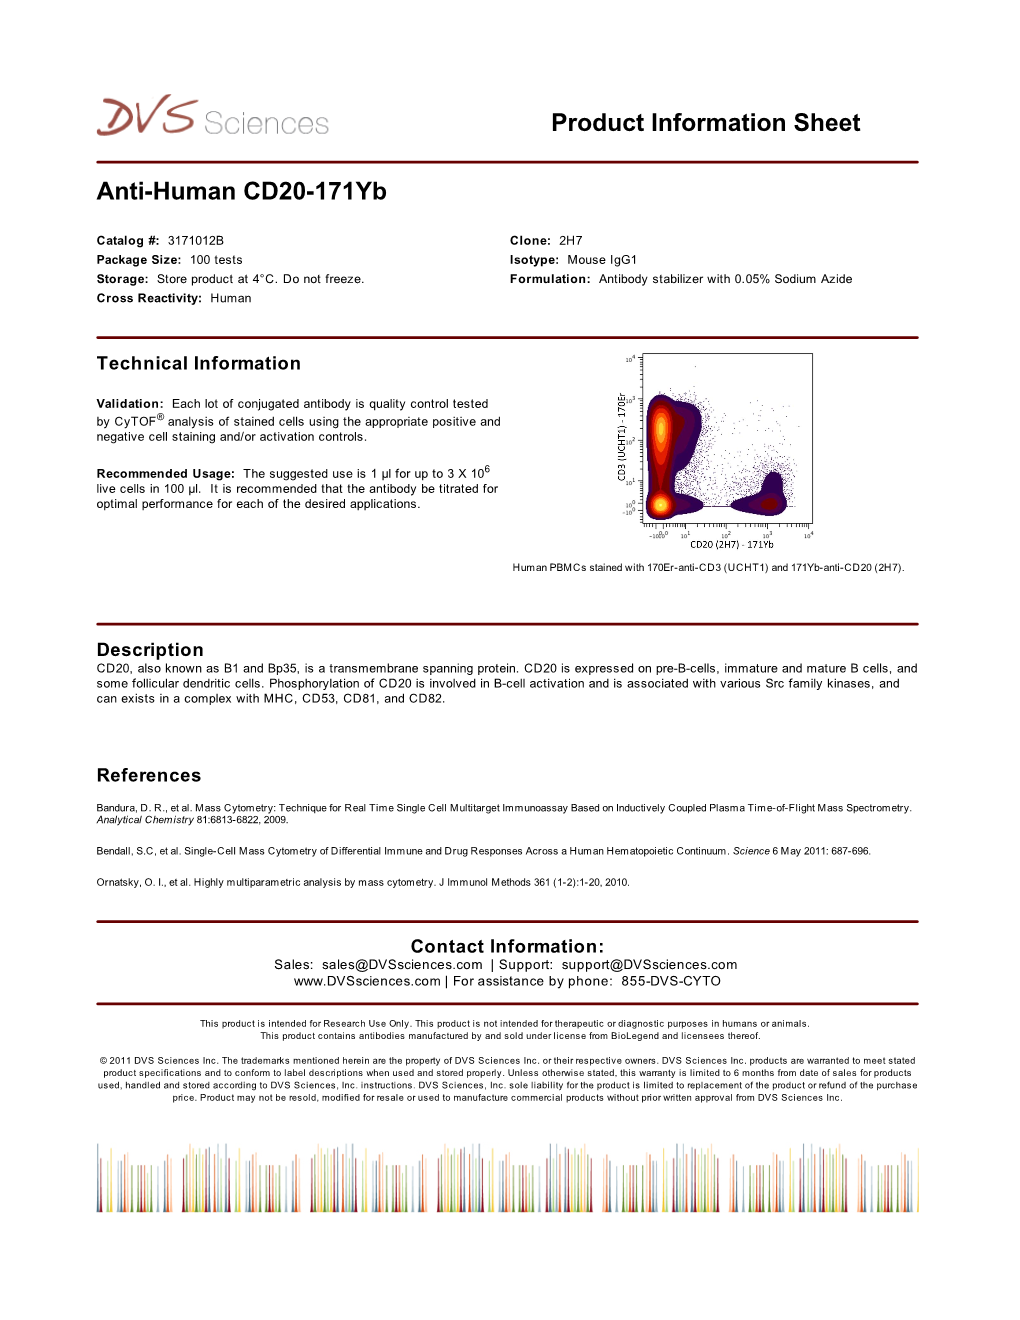 Anti-Human CD20-171Yb